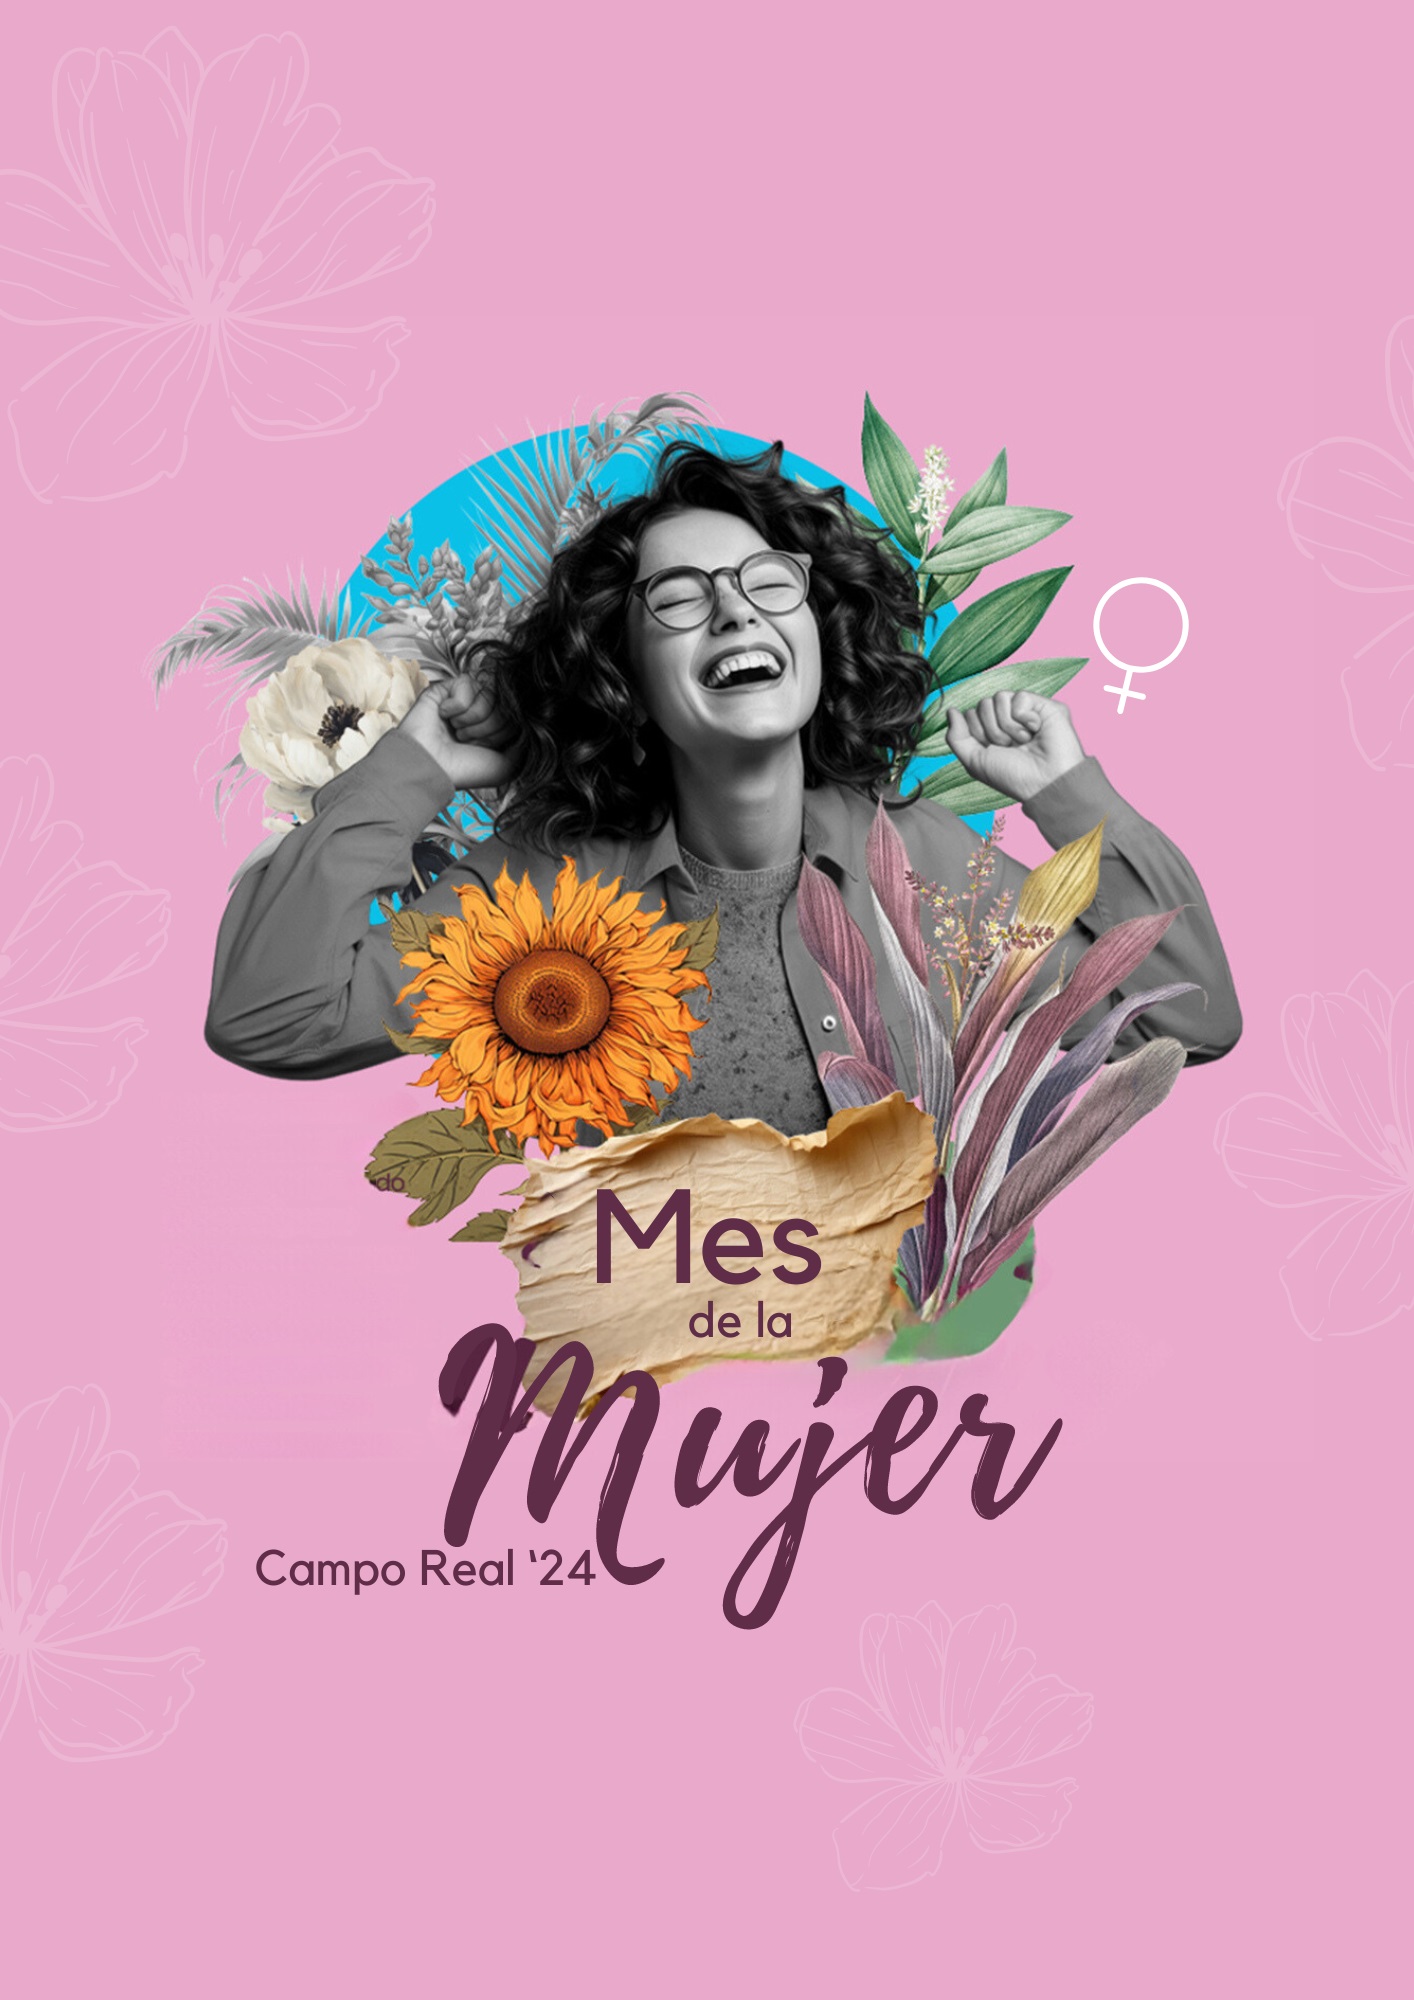 Mes_de_la_Mujer_Campo_Real_a3_1.jpg - 389.70 kB